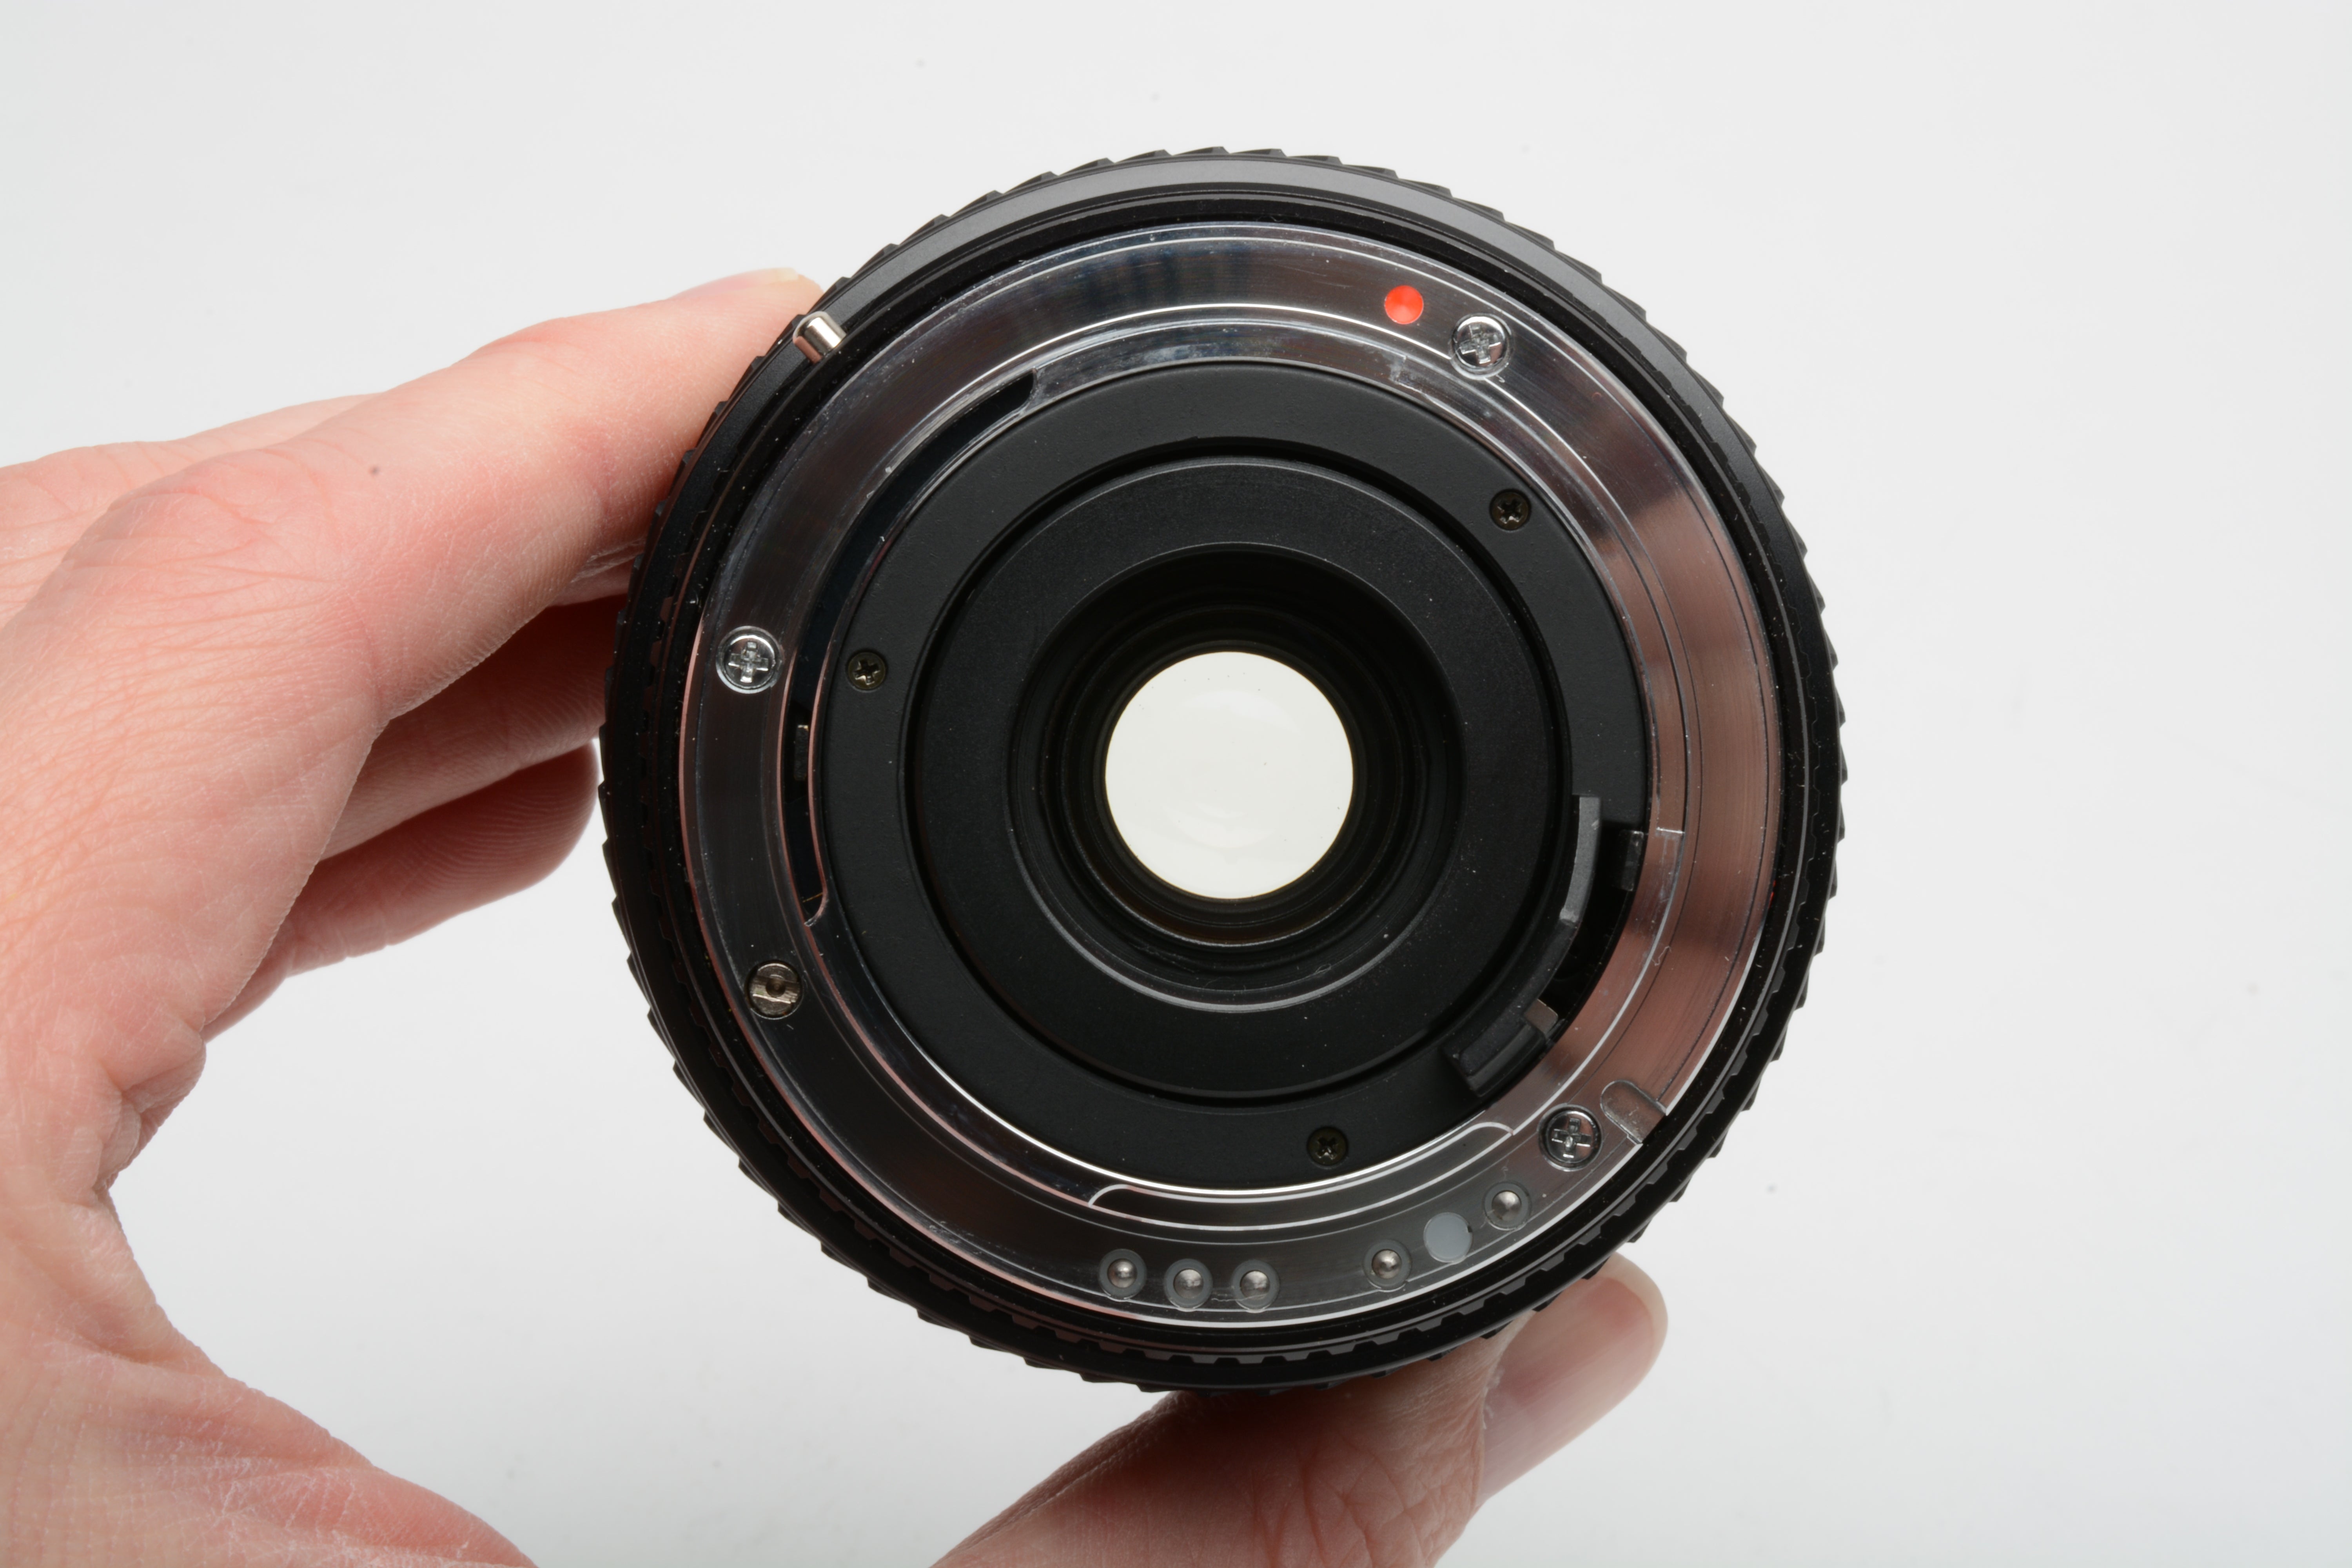 Tokina AF 70-210mm F4-5.6 telephoto zoom lens